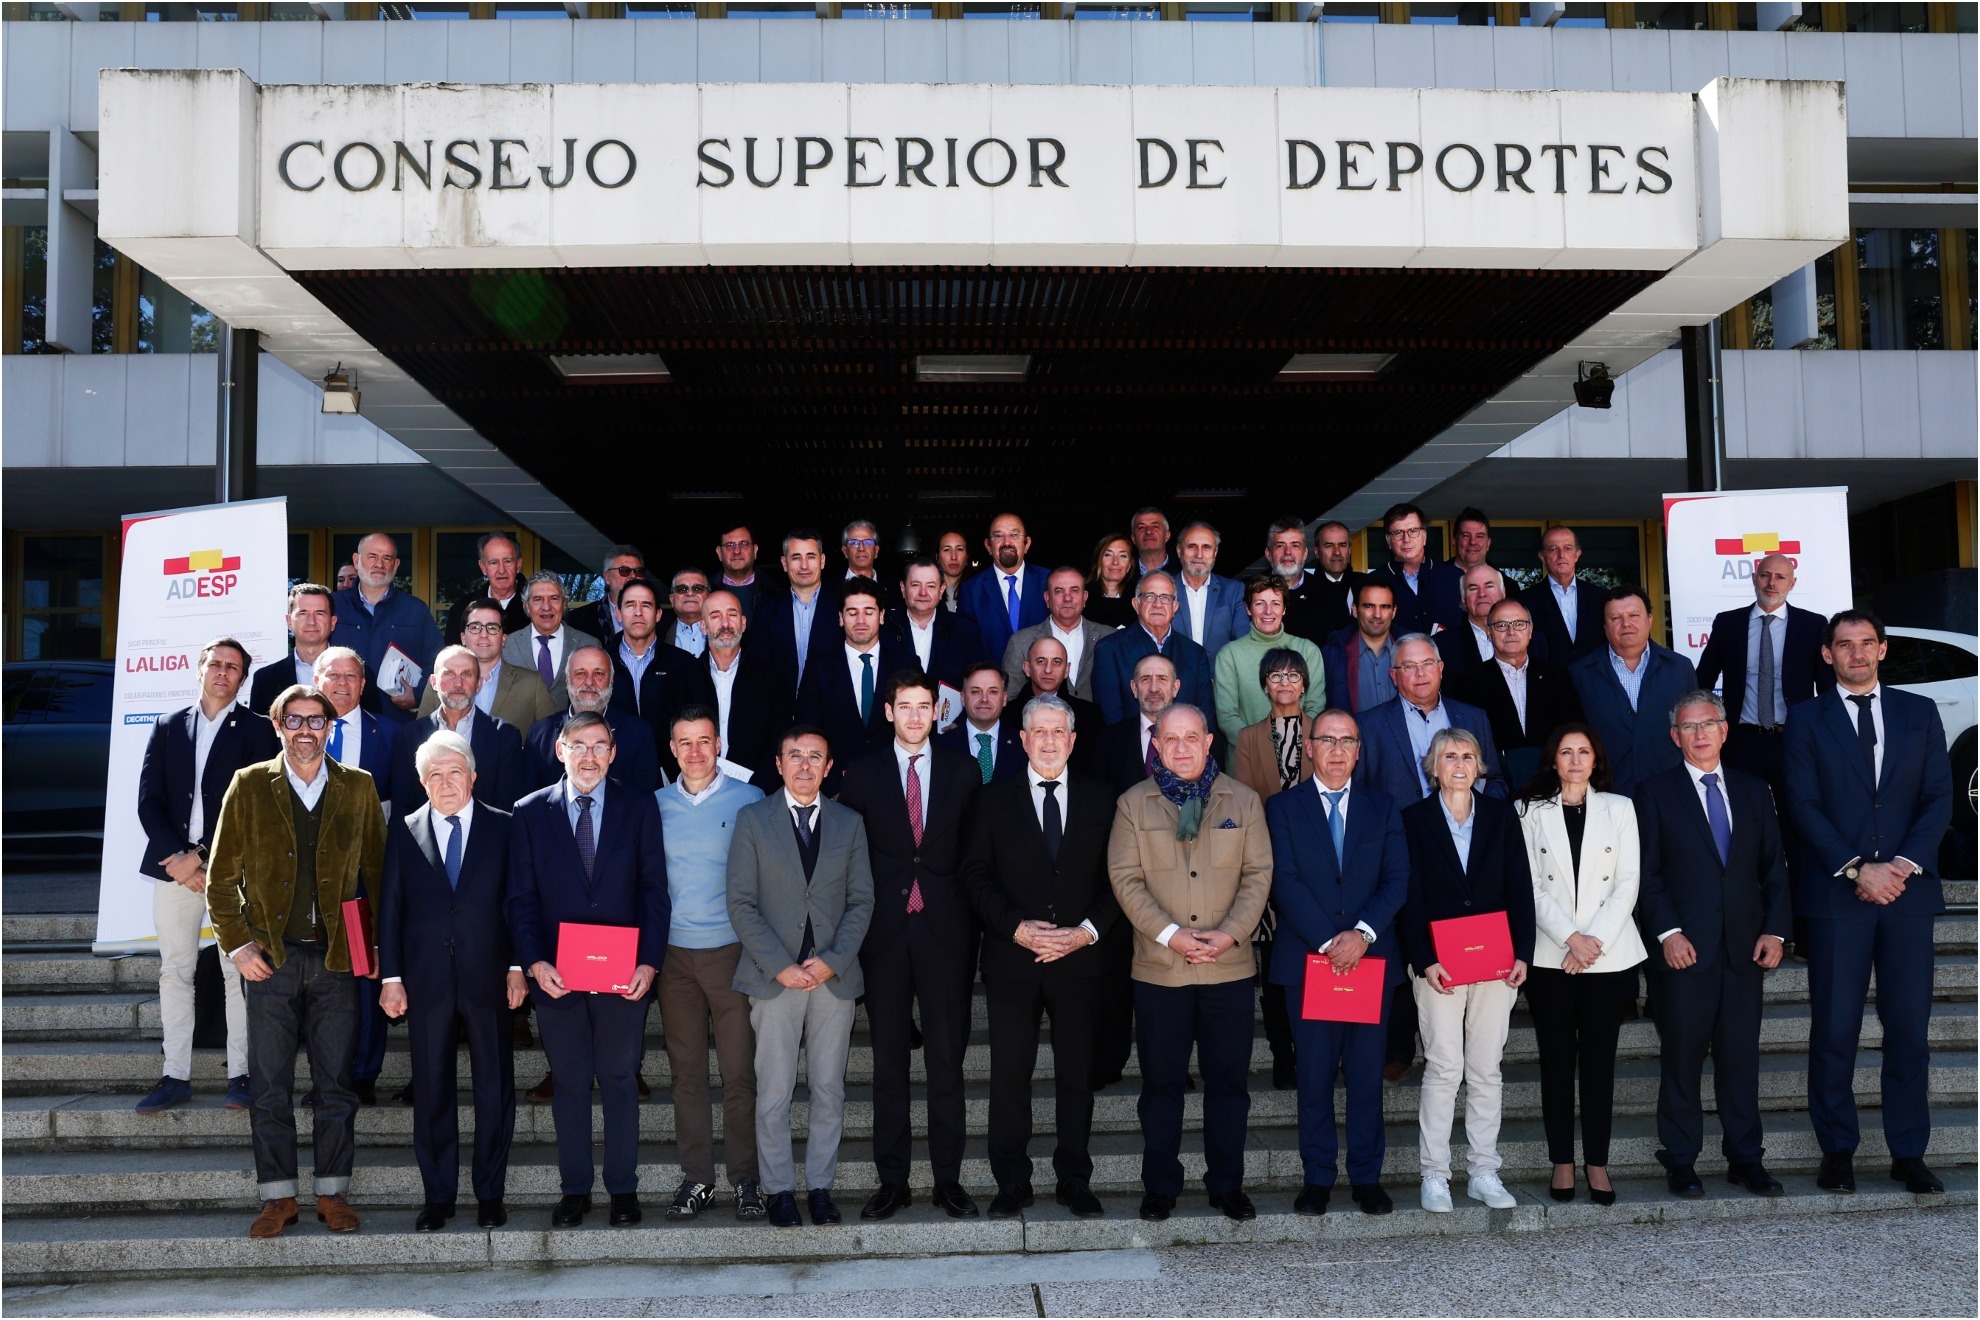 Foto de familia en la sede del CSD de los galardonados por la ADESP y los presidentes de federaciones y dirigentes de la entidad deportiva.